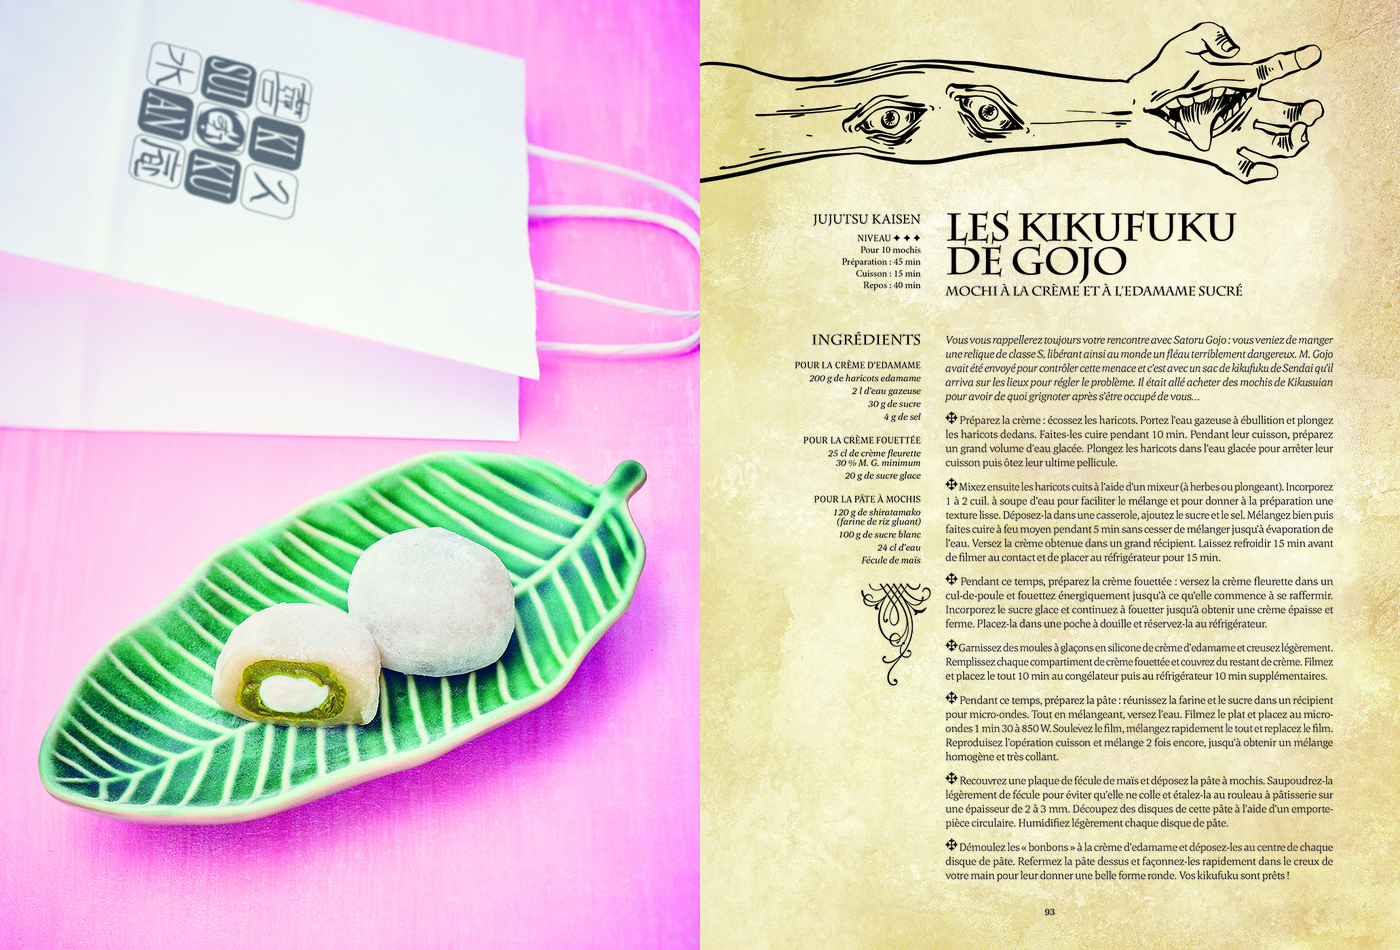 Mini-Gastronogeek - Le livre de pâtisserie - - Thibaud Villanova (EAN13 :  9782017885504) | Hachette Heroes